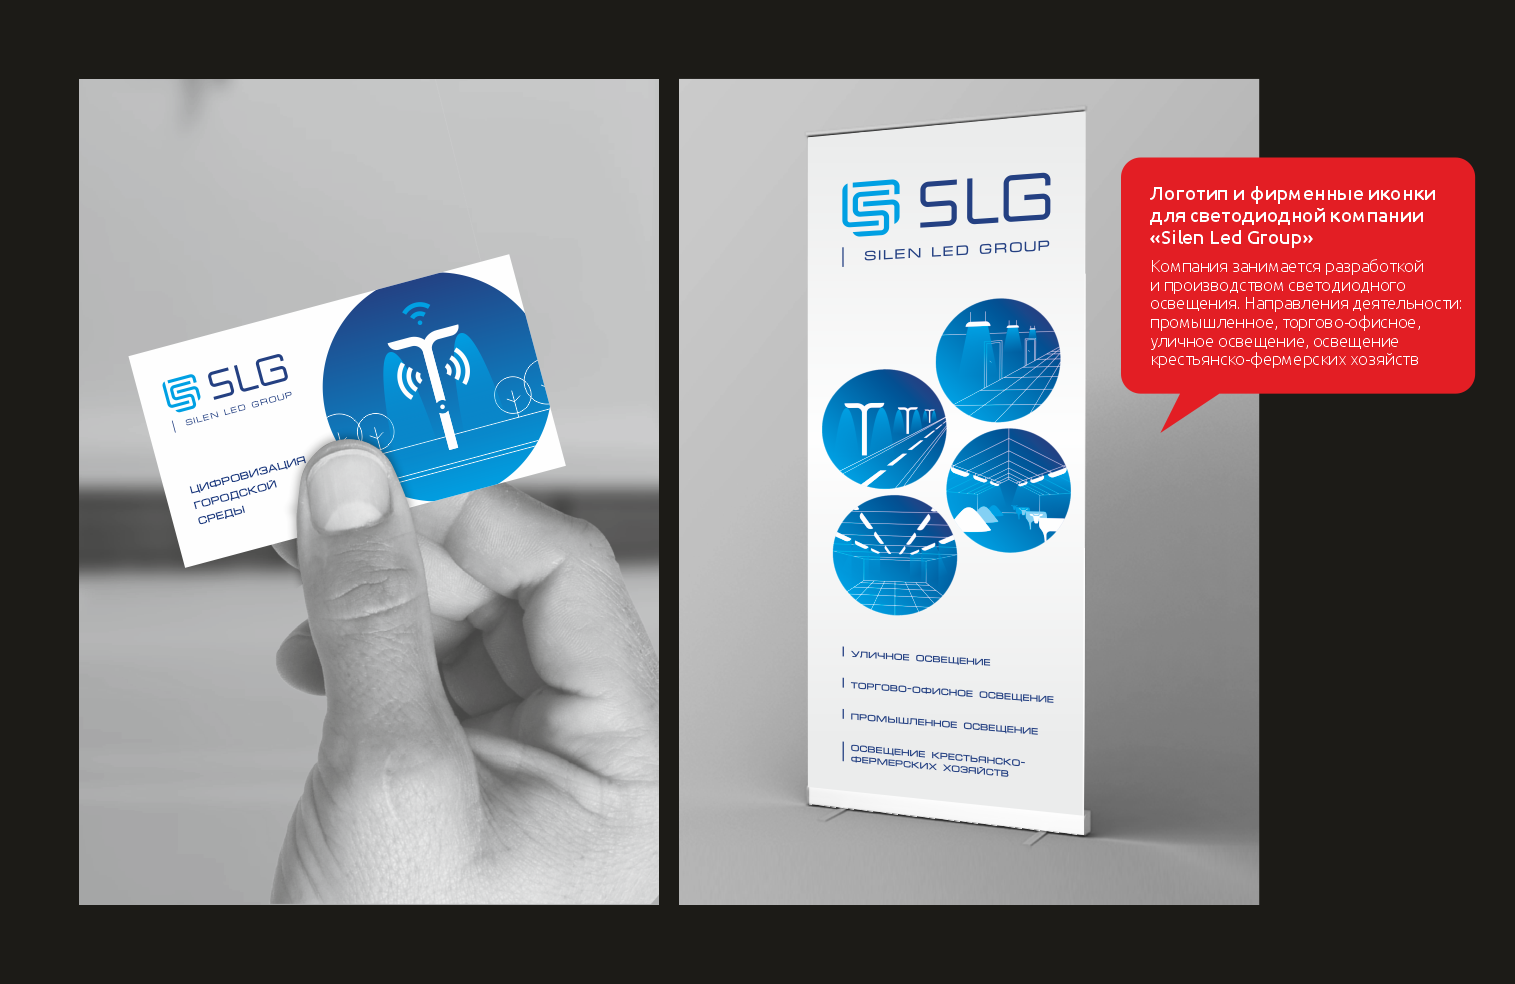 Логотип и фирменные иконки для светодиодной компании «Silen Led Group»